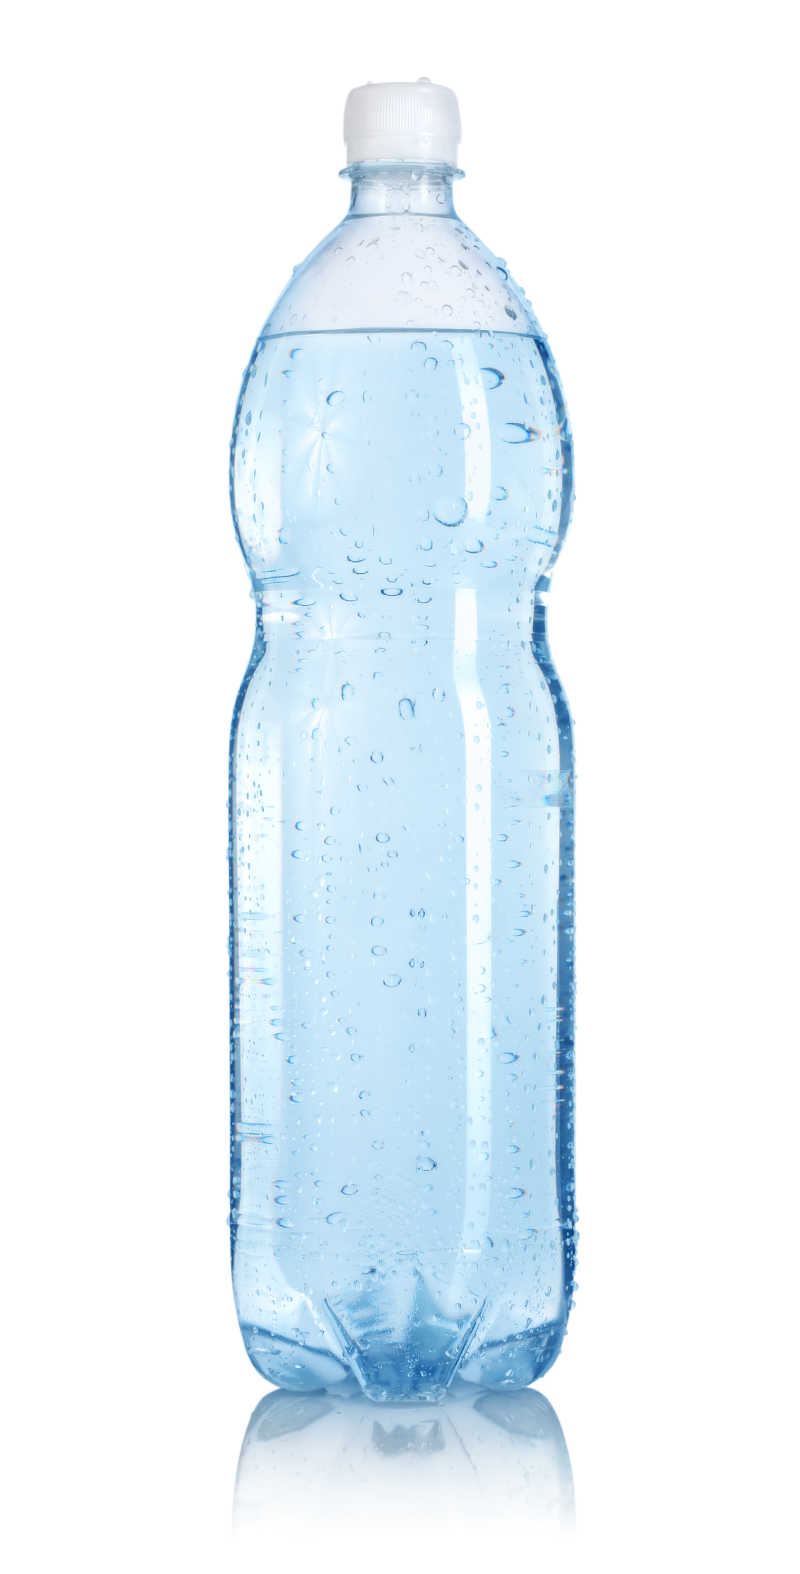 装满纯净水的塑料瓶